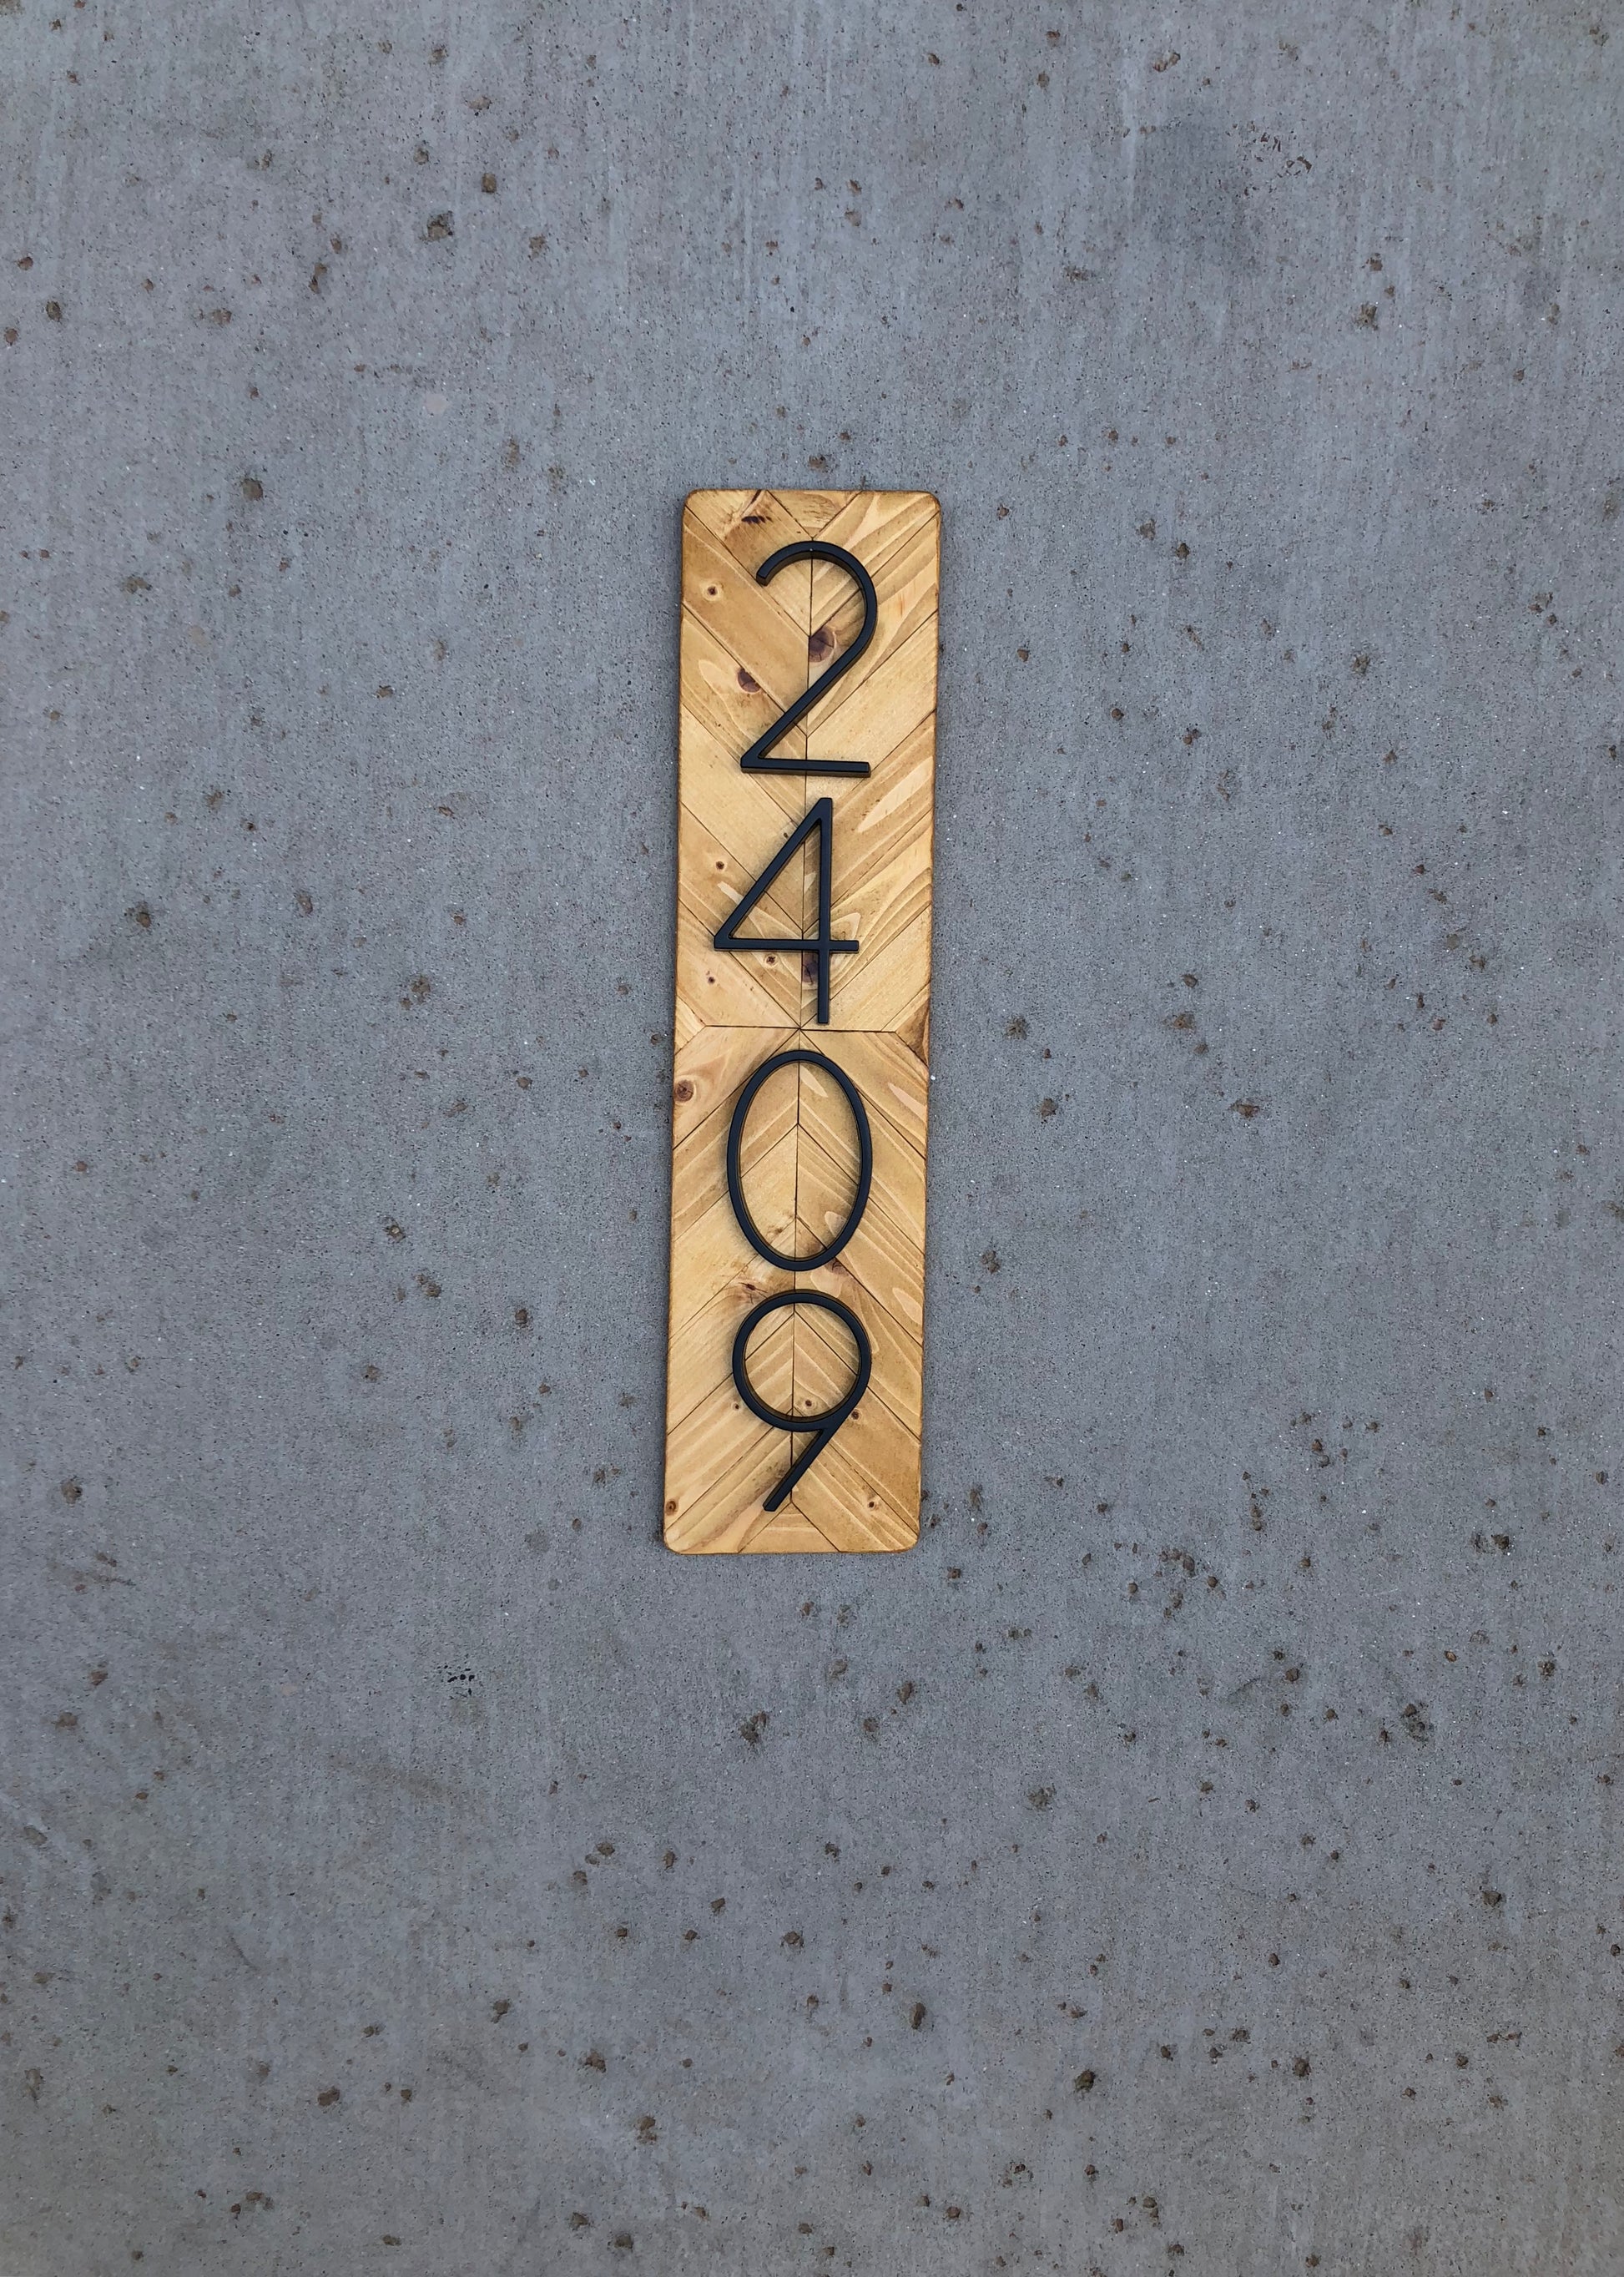 Números de casa, letrero de dirección, letrero vertical exterior, placa de  dirección personalizada, 3 colores, hasta 6 dígitos, números de casa